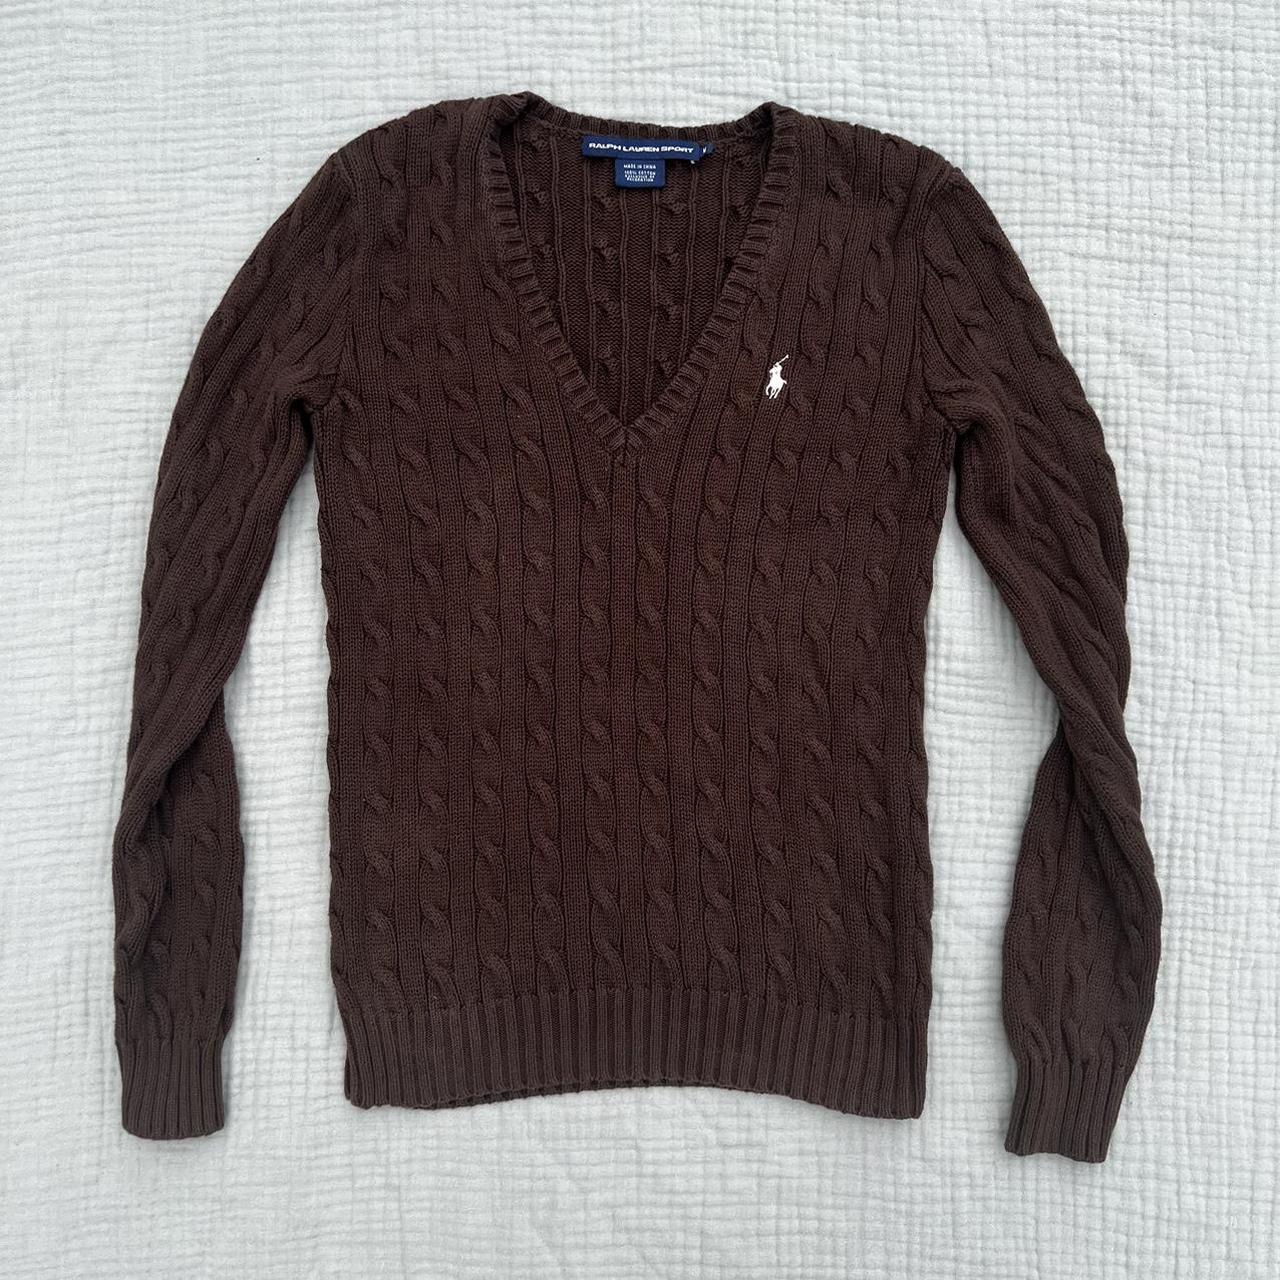 Ralph Lauren Sport Vintage Brown Sweater In great... - Depop